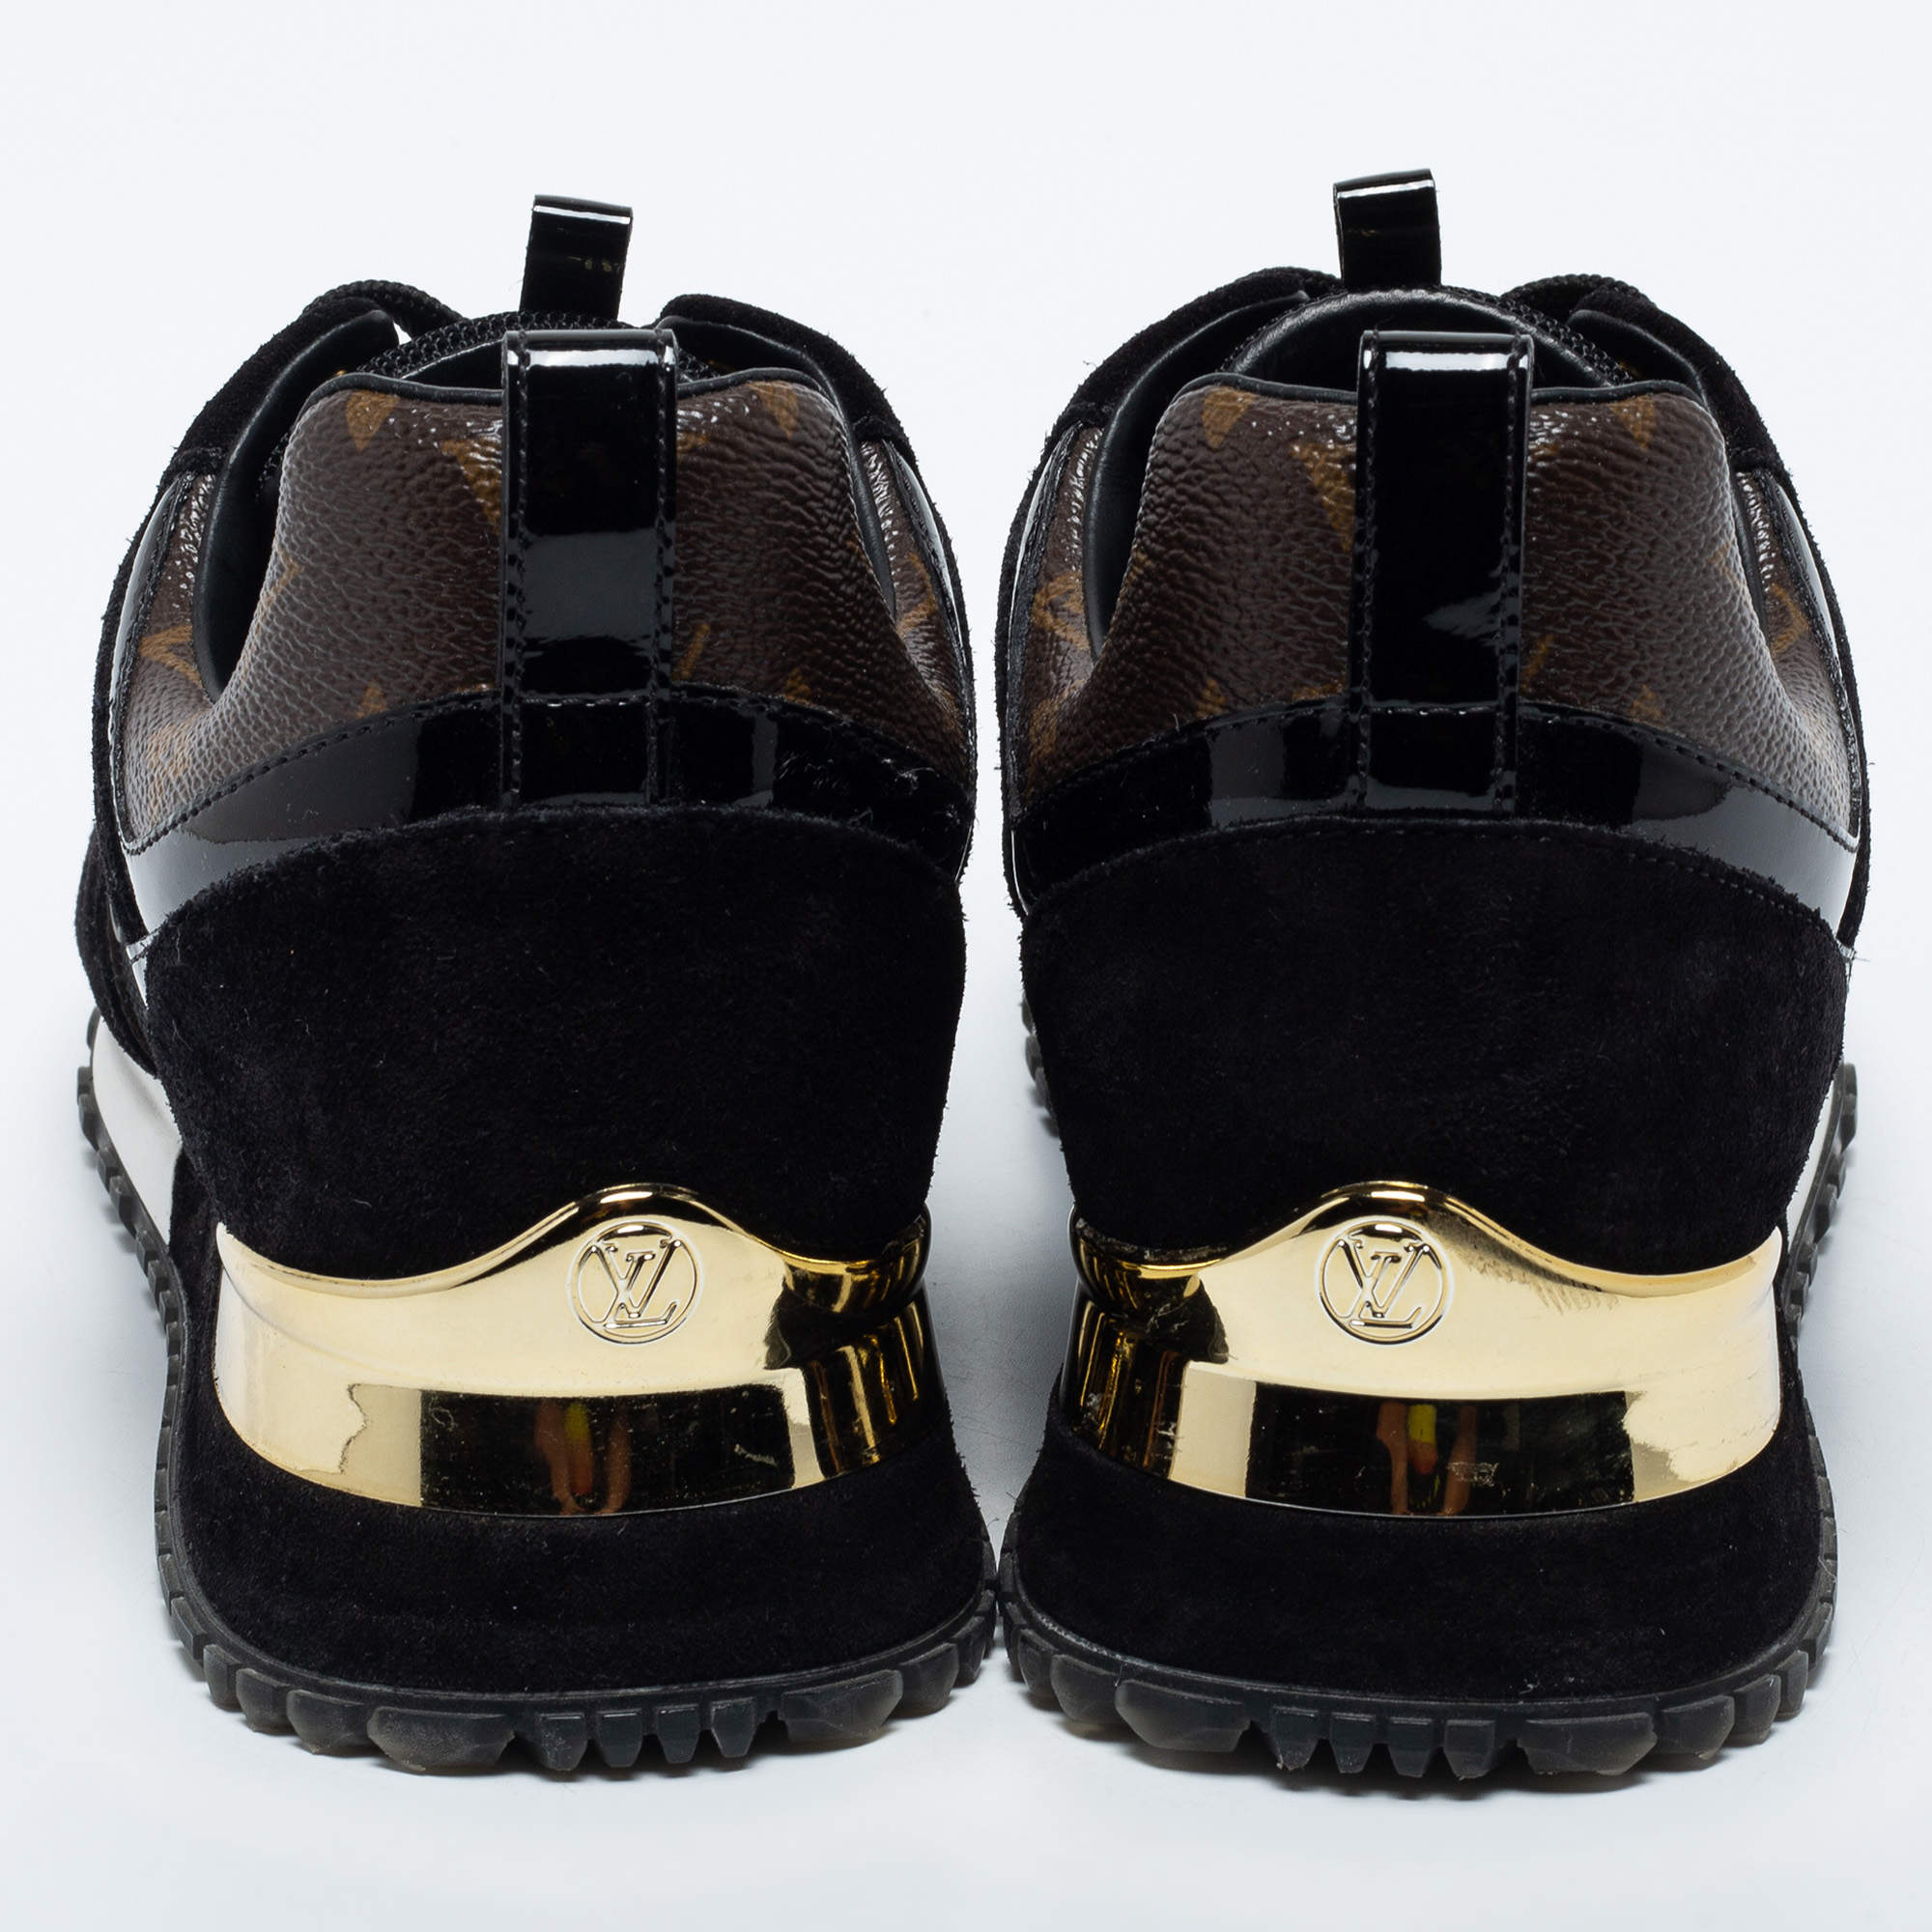 Run away trainers Louis Vuitton Khaki size 37 EU in Suede - 31509441